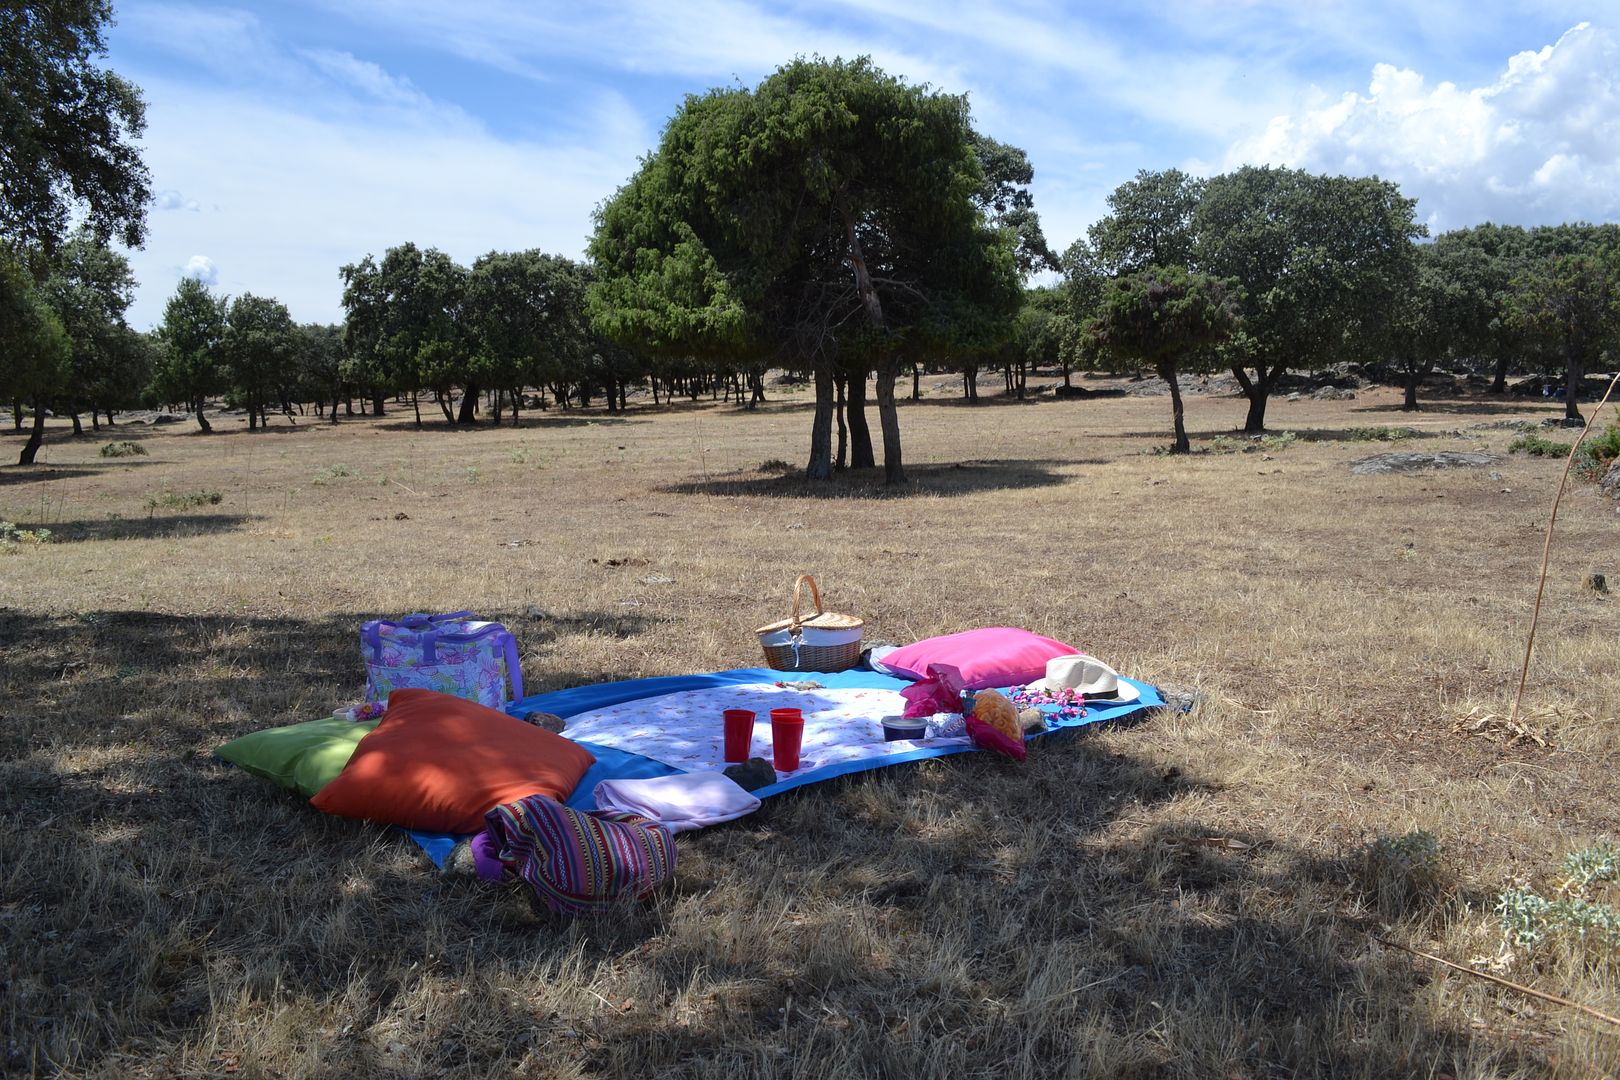  photo picnic-en-familia-campo-dehesa-mantel-cesta-cojines2_zps63ee1c28.jpg